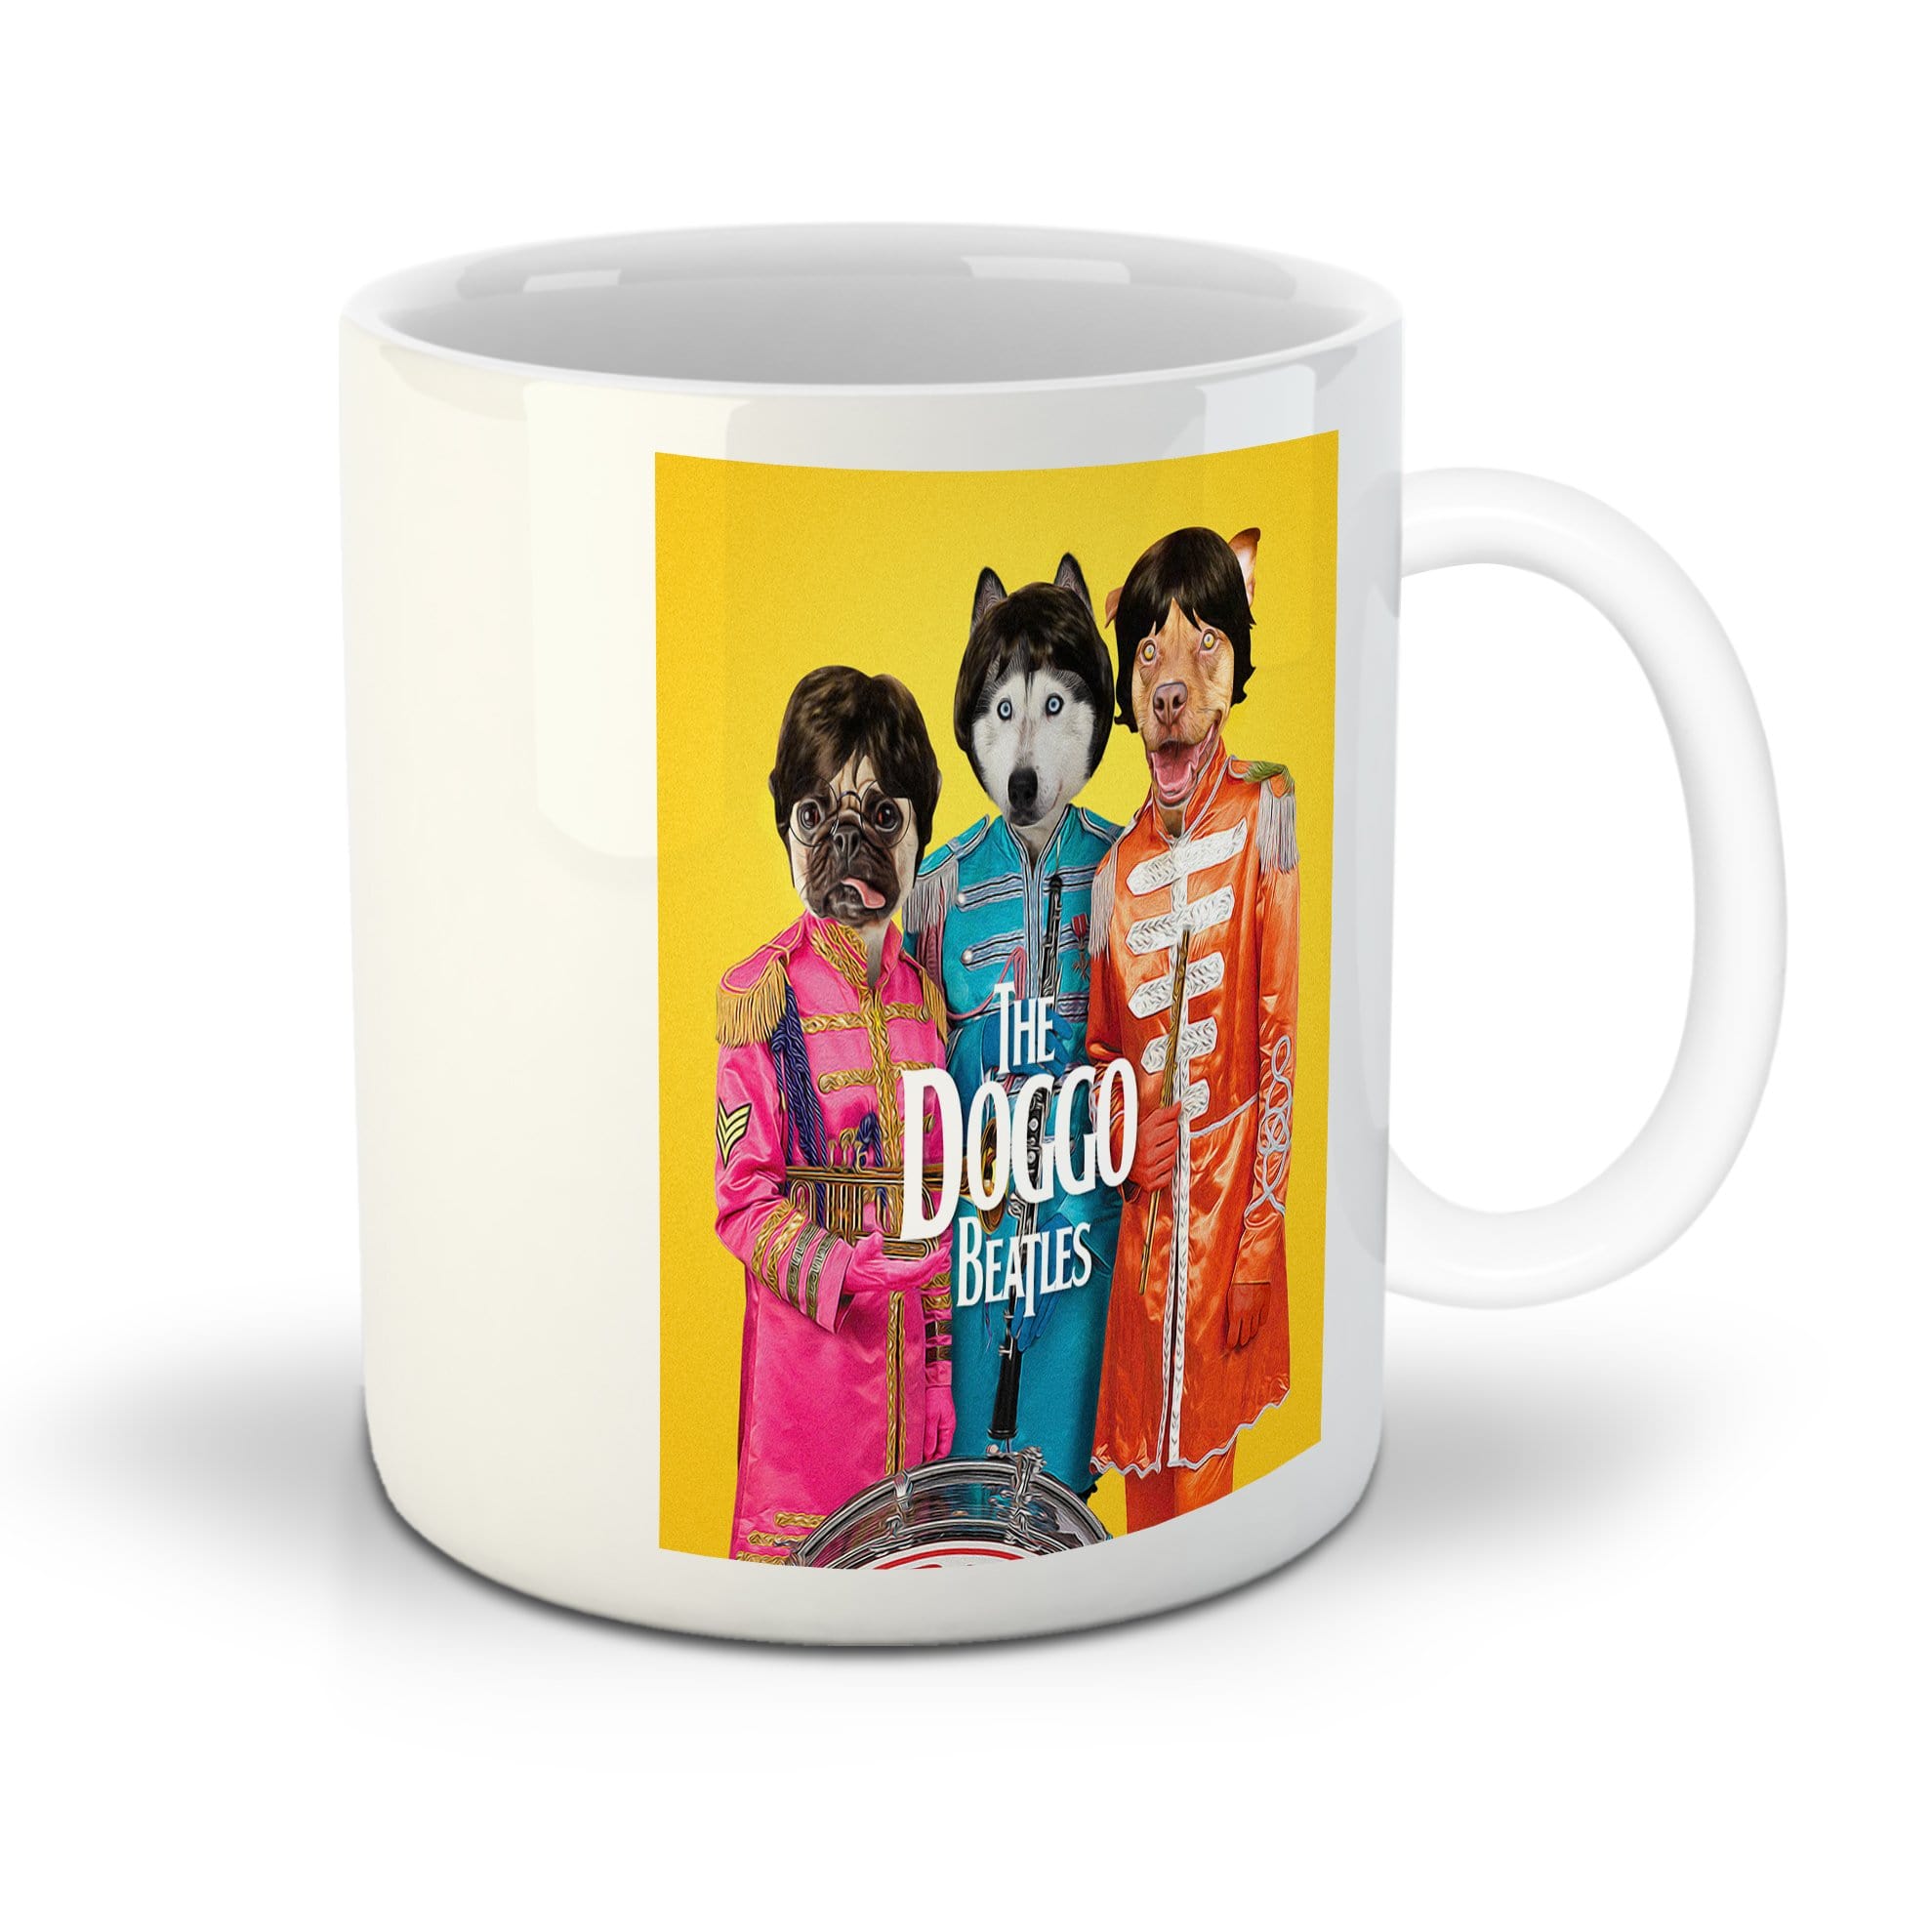 &#39;The Doggo Beatles&#39; Personalized 3 Pet Mug